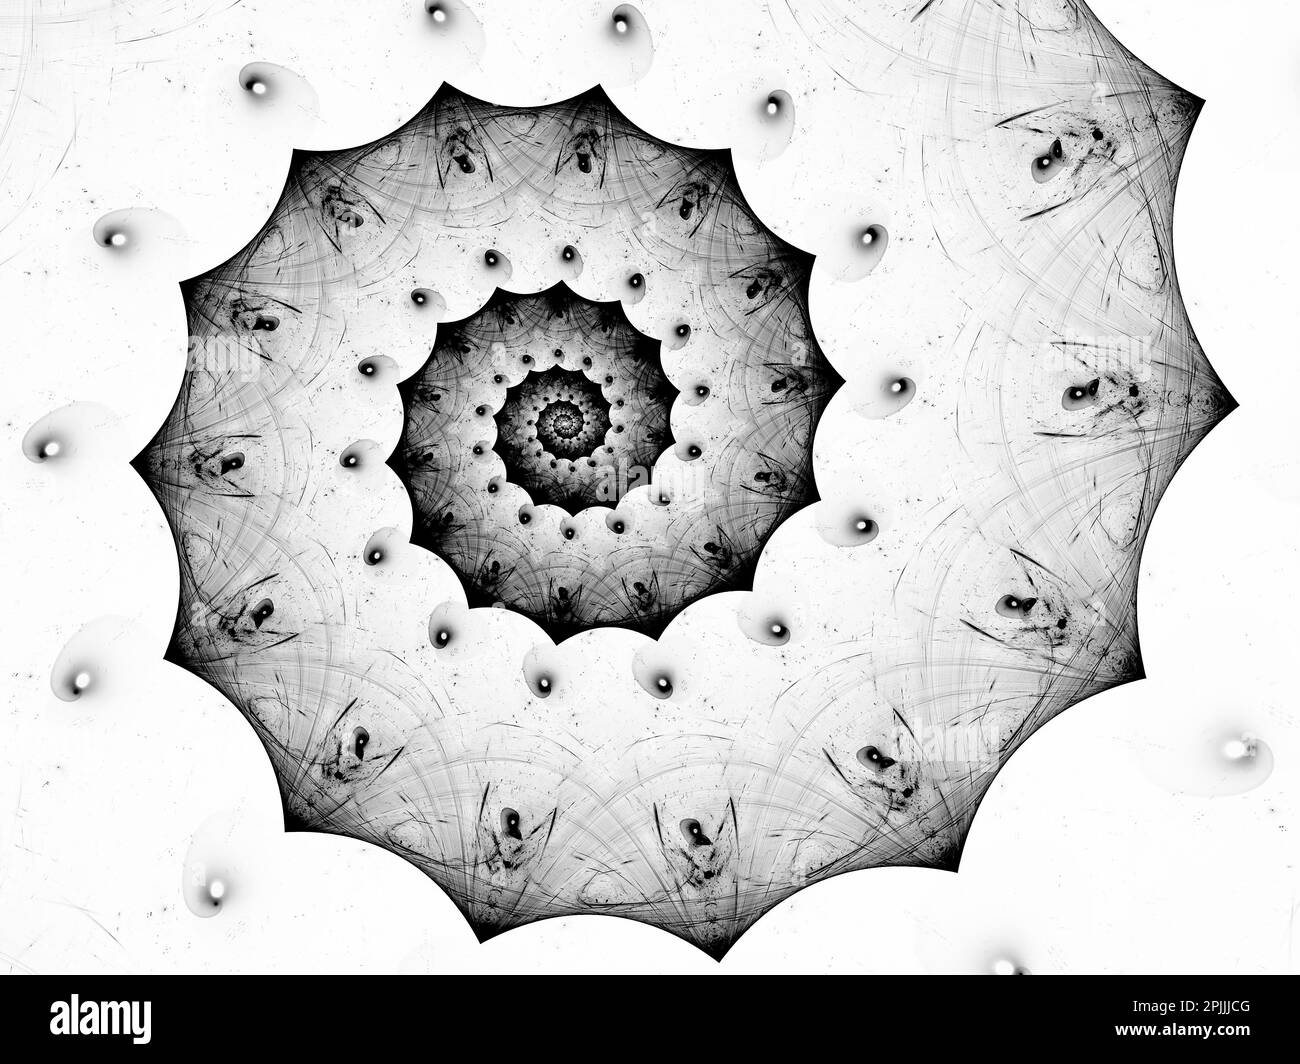 Conception en spirale d'ammonium noir et blanc Banque D'Images